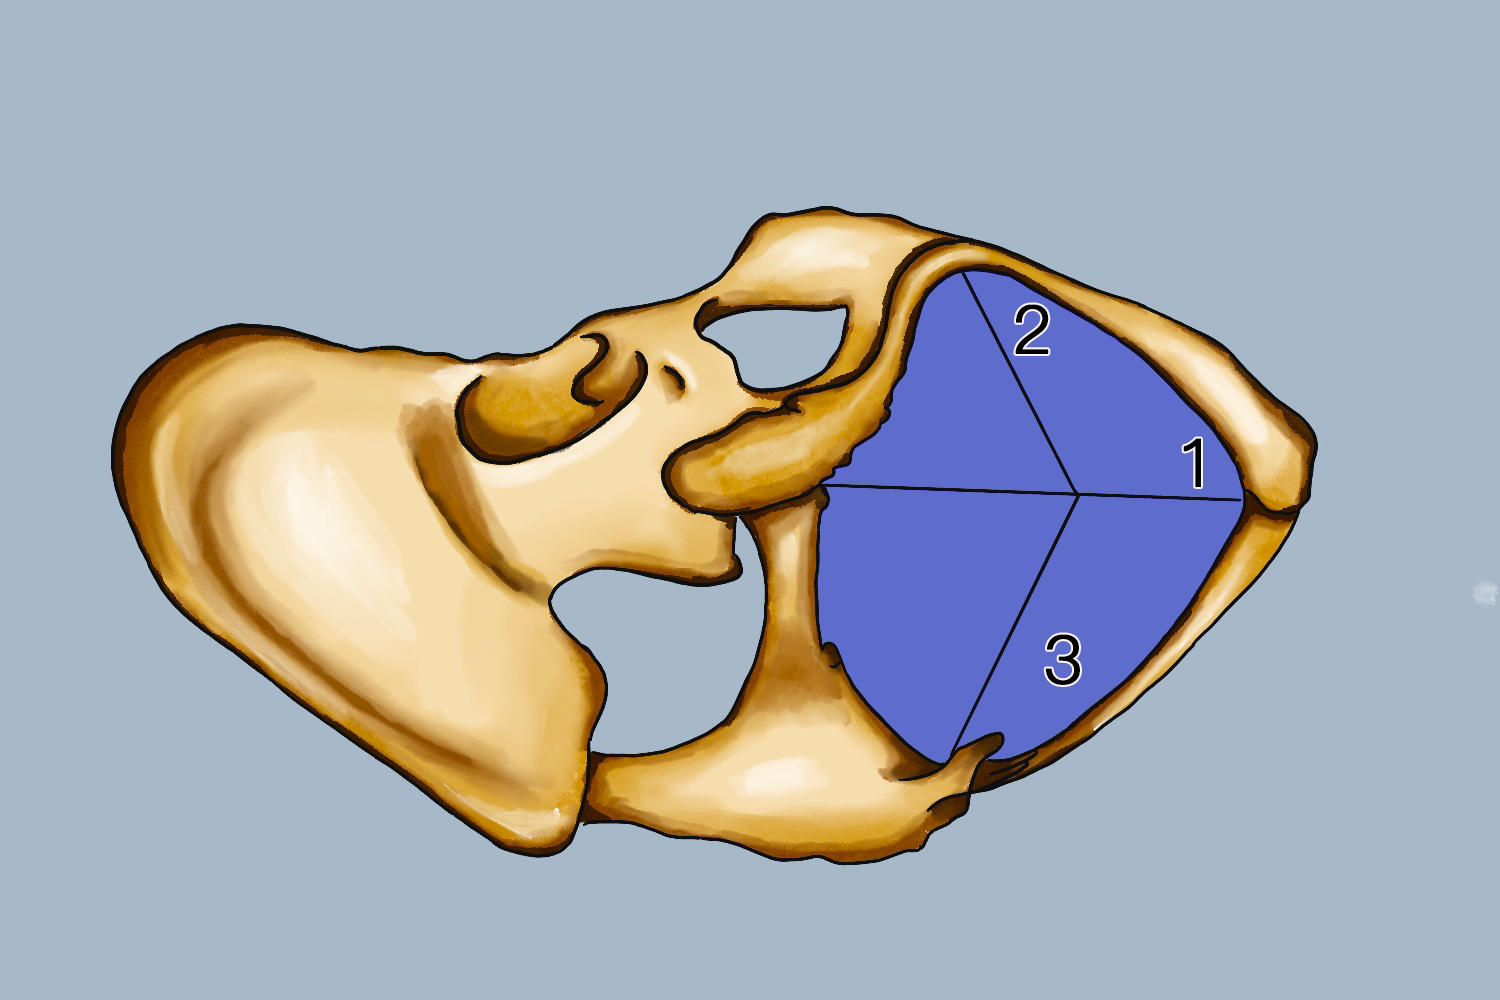 骨盆三个平面图解